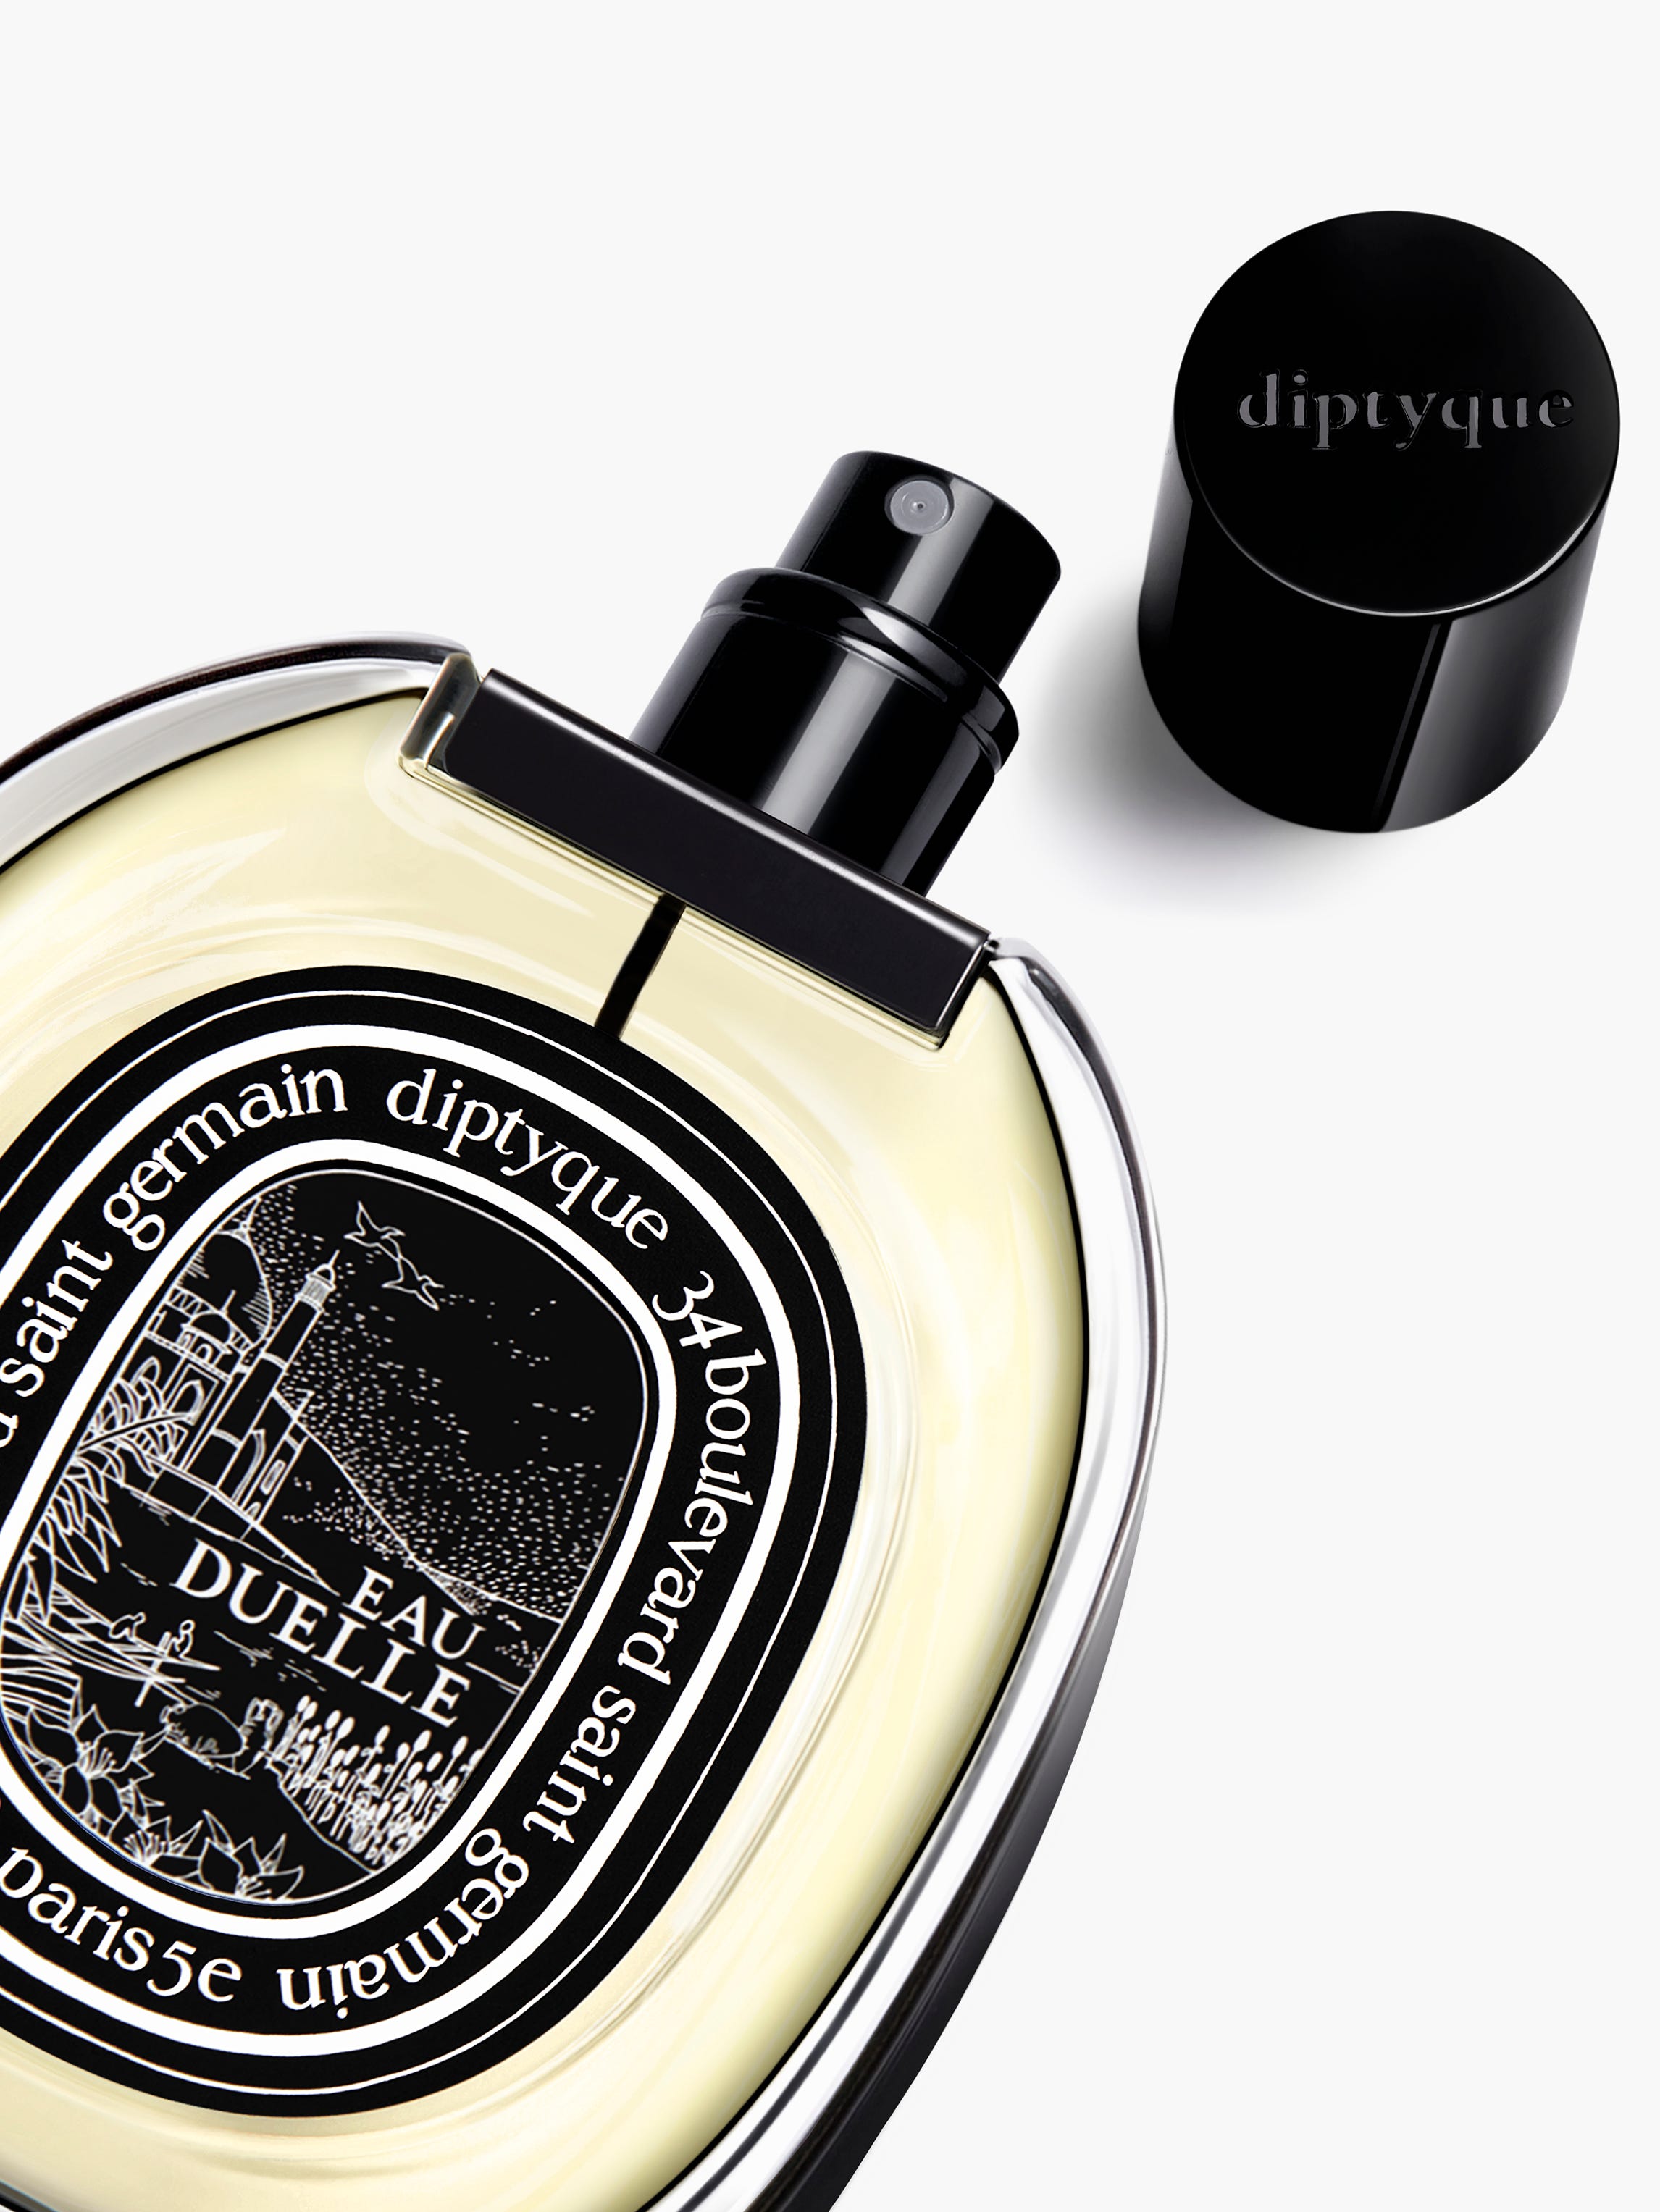 Eau Duelle - Eau de parfum 75ml | Diptyque Paris